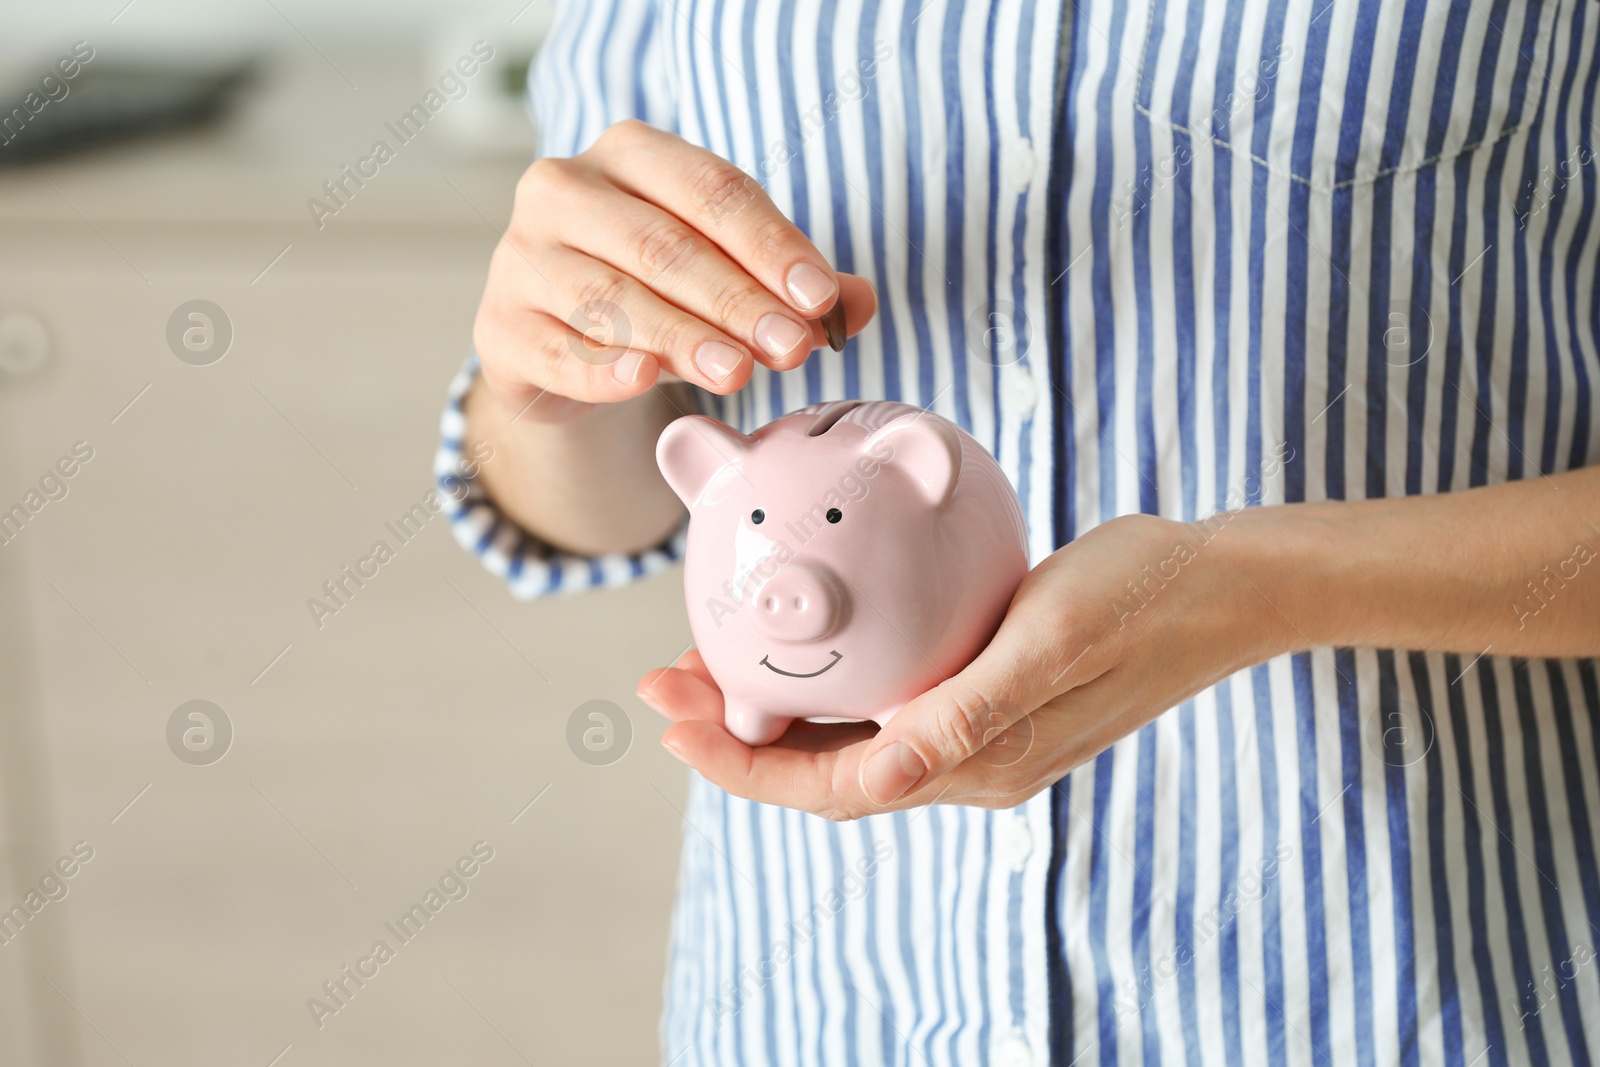 Photo of Woman putting coin into piggy bank indoors, closeup. Money savings